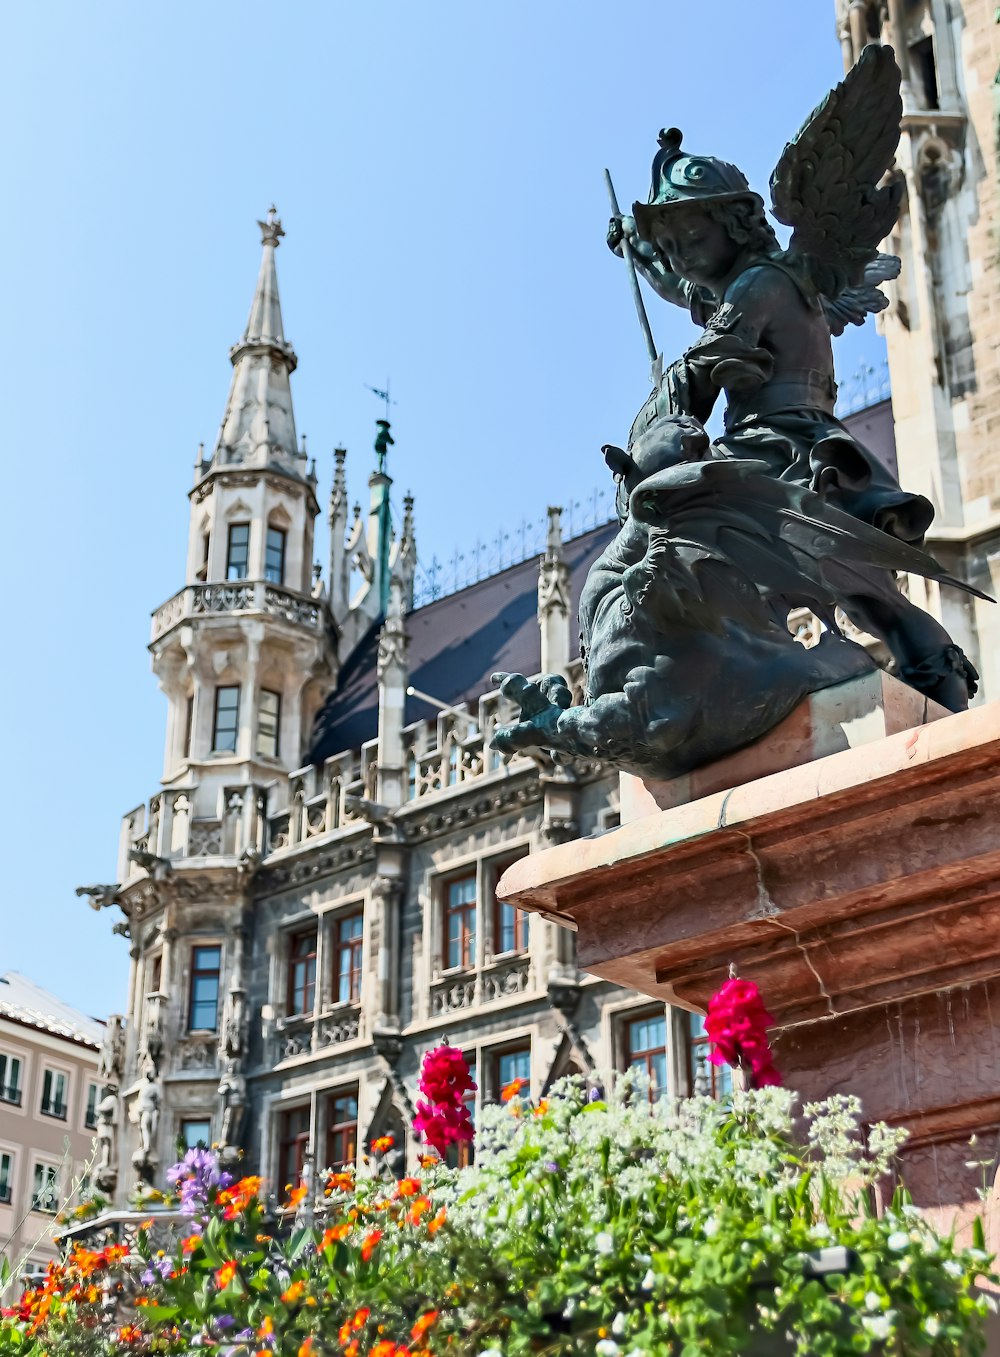 Flores na frente da estátua preta e do edifício